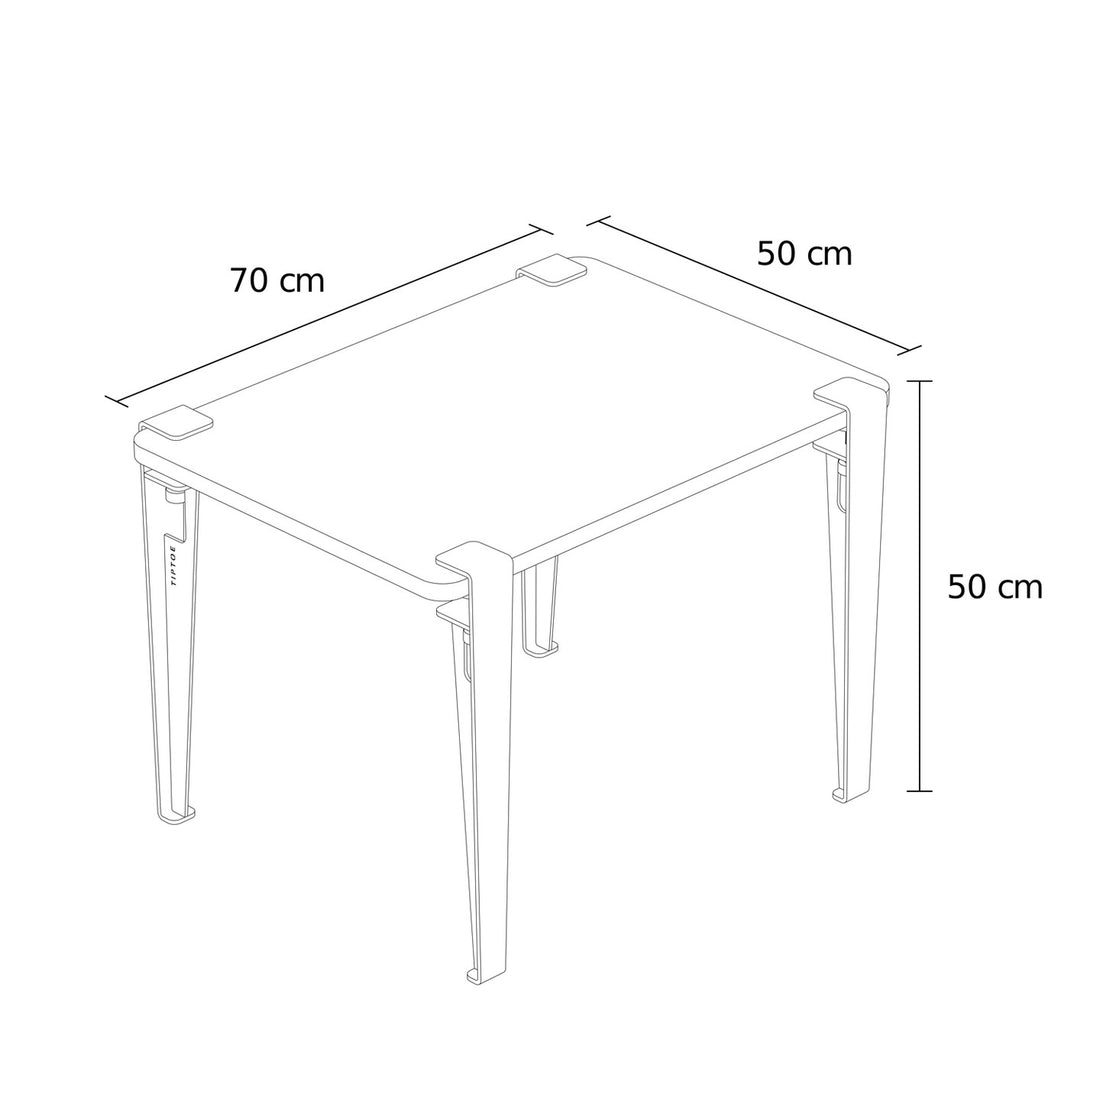 tiptoe-kids-desk-solid-oak-tabletop-with-legs-cloudy-white-70x50cm-tipt-stt07005023s01-tle050st1mz100- (5)